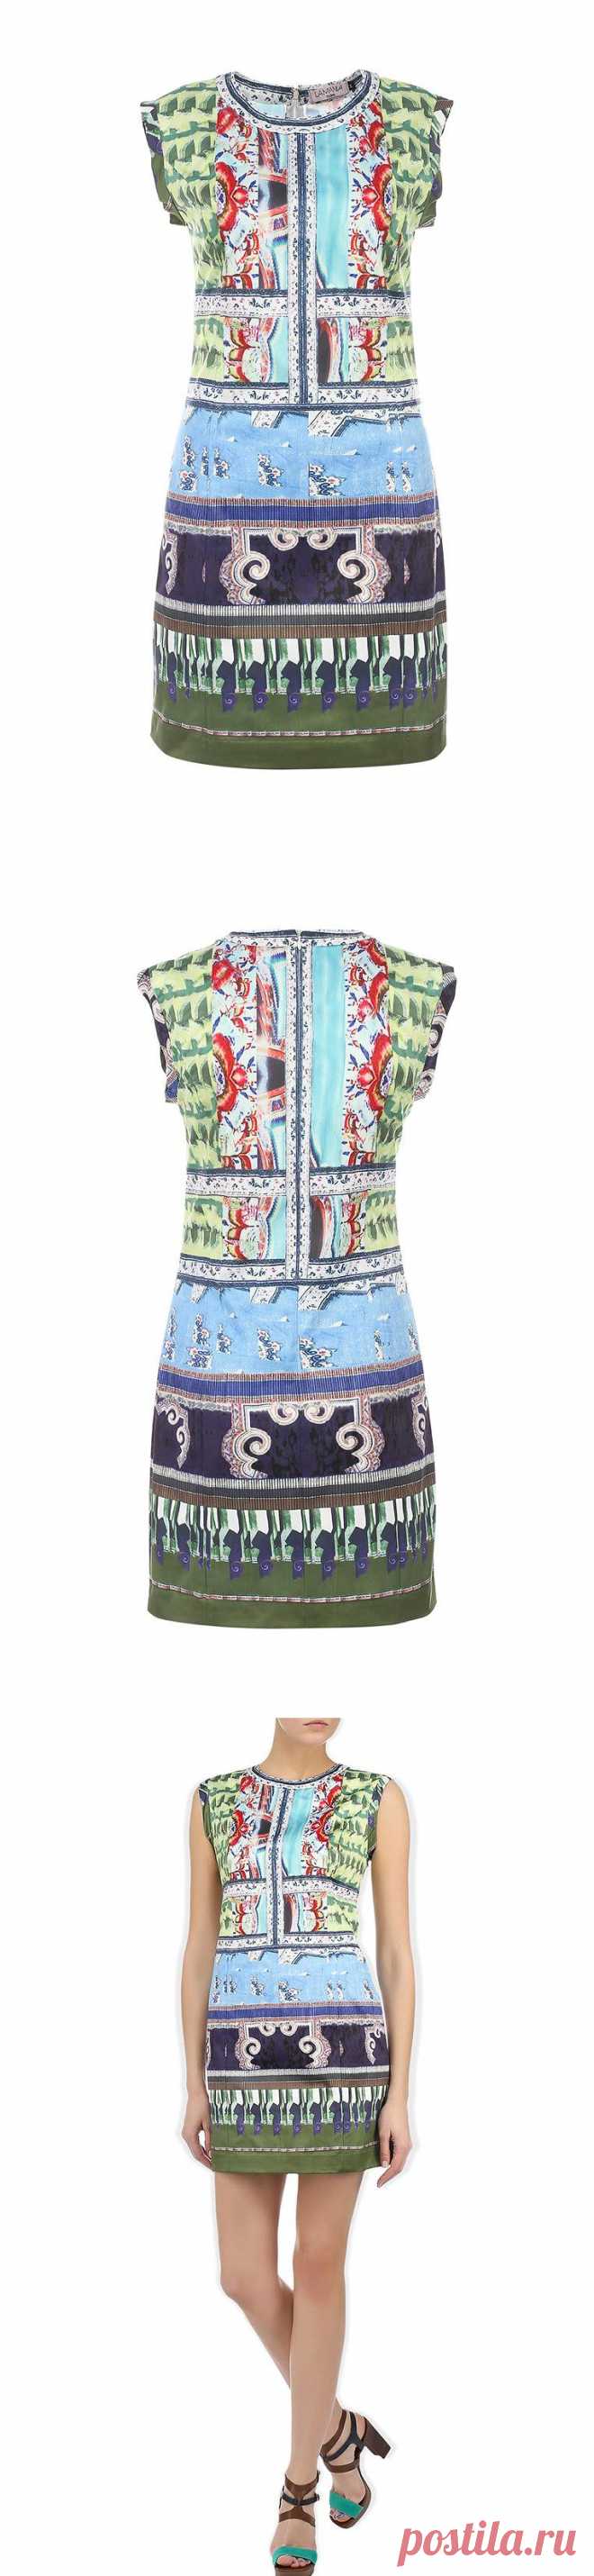 Восхитительное платье Lamania Trend - это выбор сильной и уверенной в себе женщины, желающей подчеркнуть свою индивидуальность и чувство стиля! 
Купить со скидкой за 1690 руб.